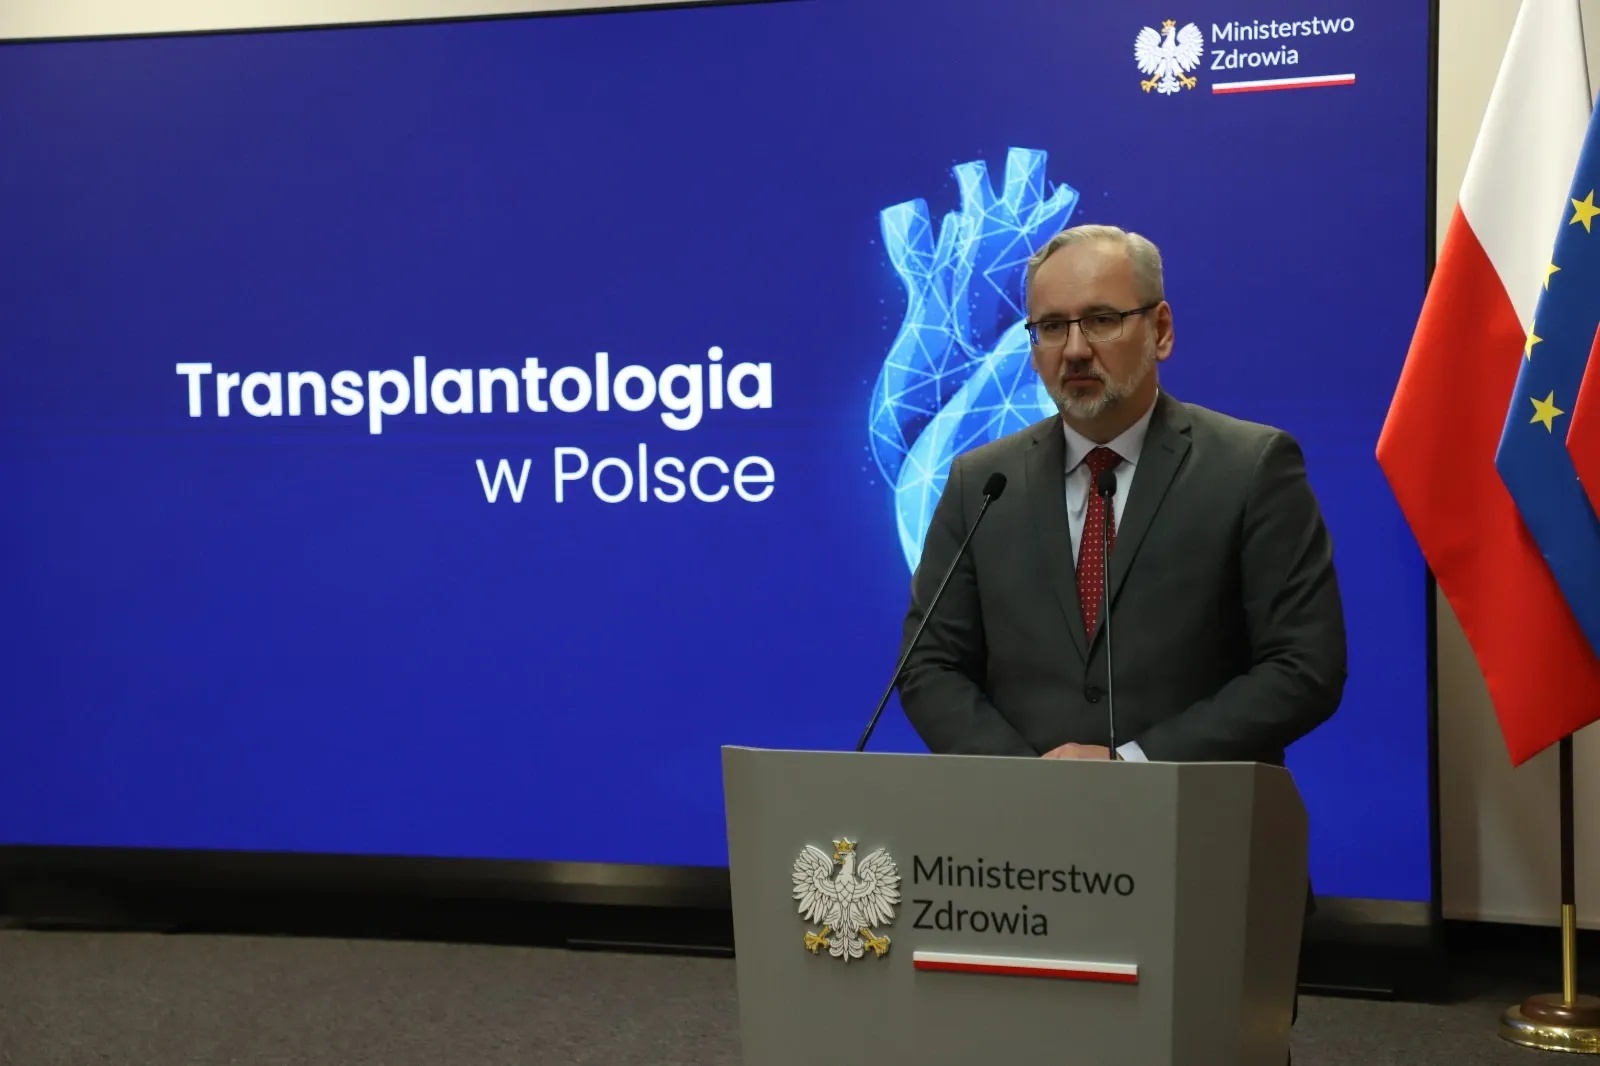 Wsparcie transplantologii w Polsce